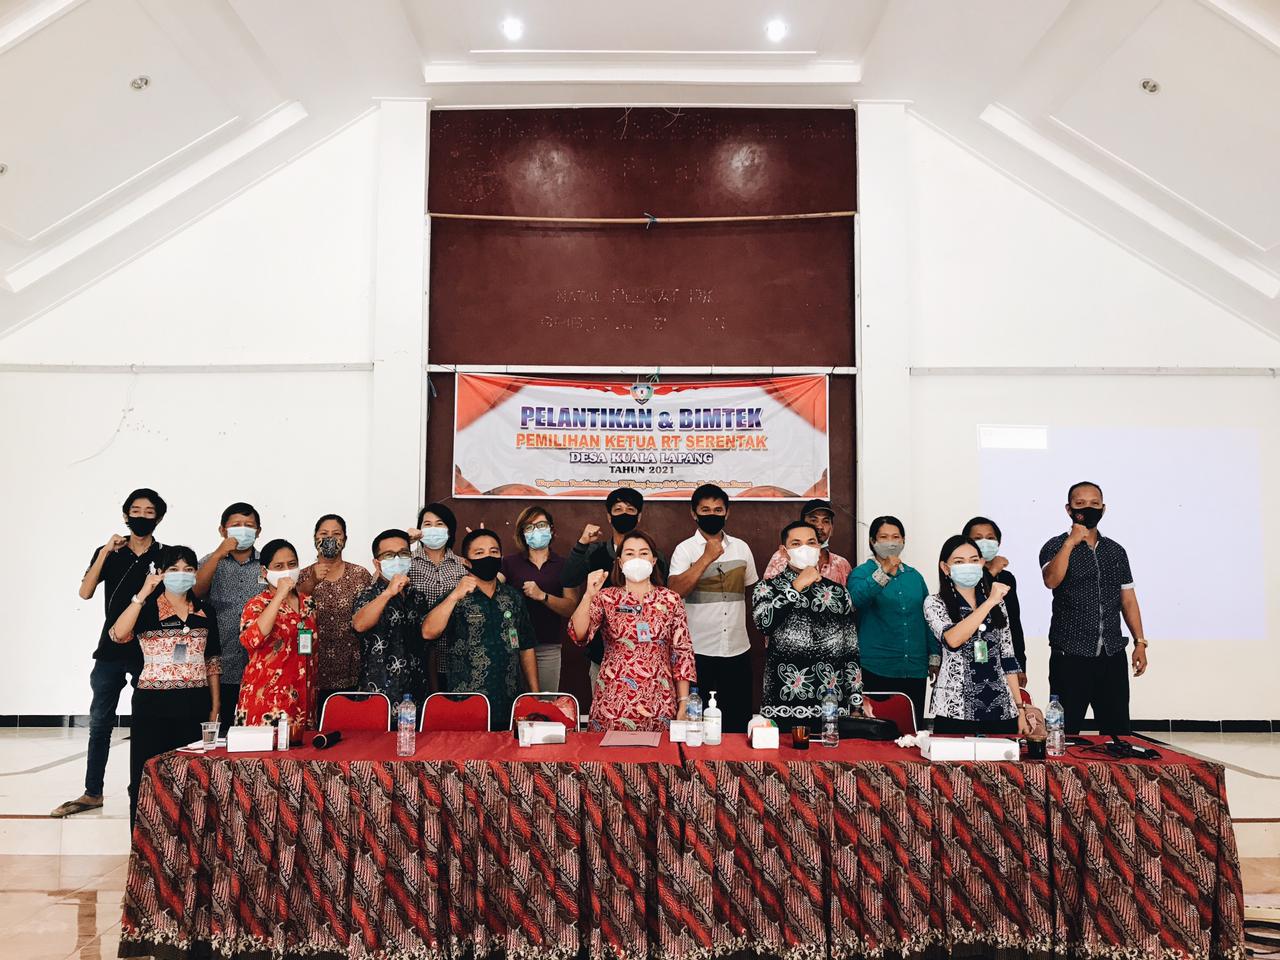 Pernah Jadi yang Pertama di Indonesia pada 2016, Sejumlah Desa di Kabupaten Malinau Kembali Gelar Pemilihan Ketua RT Serentak - Desapedia